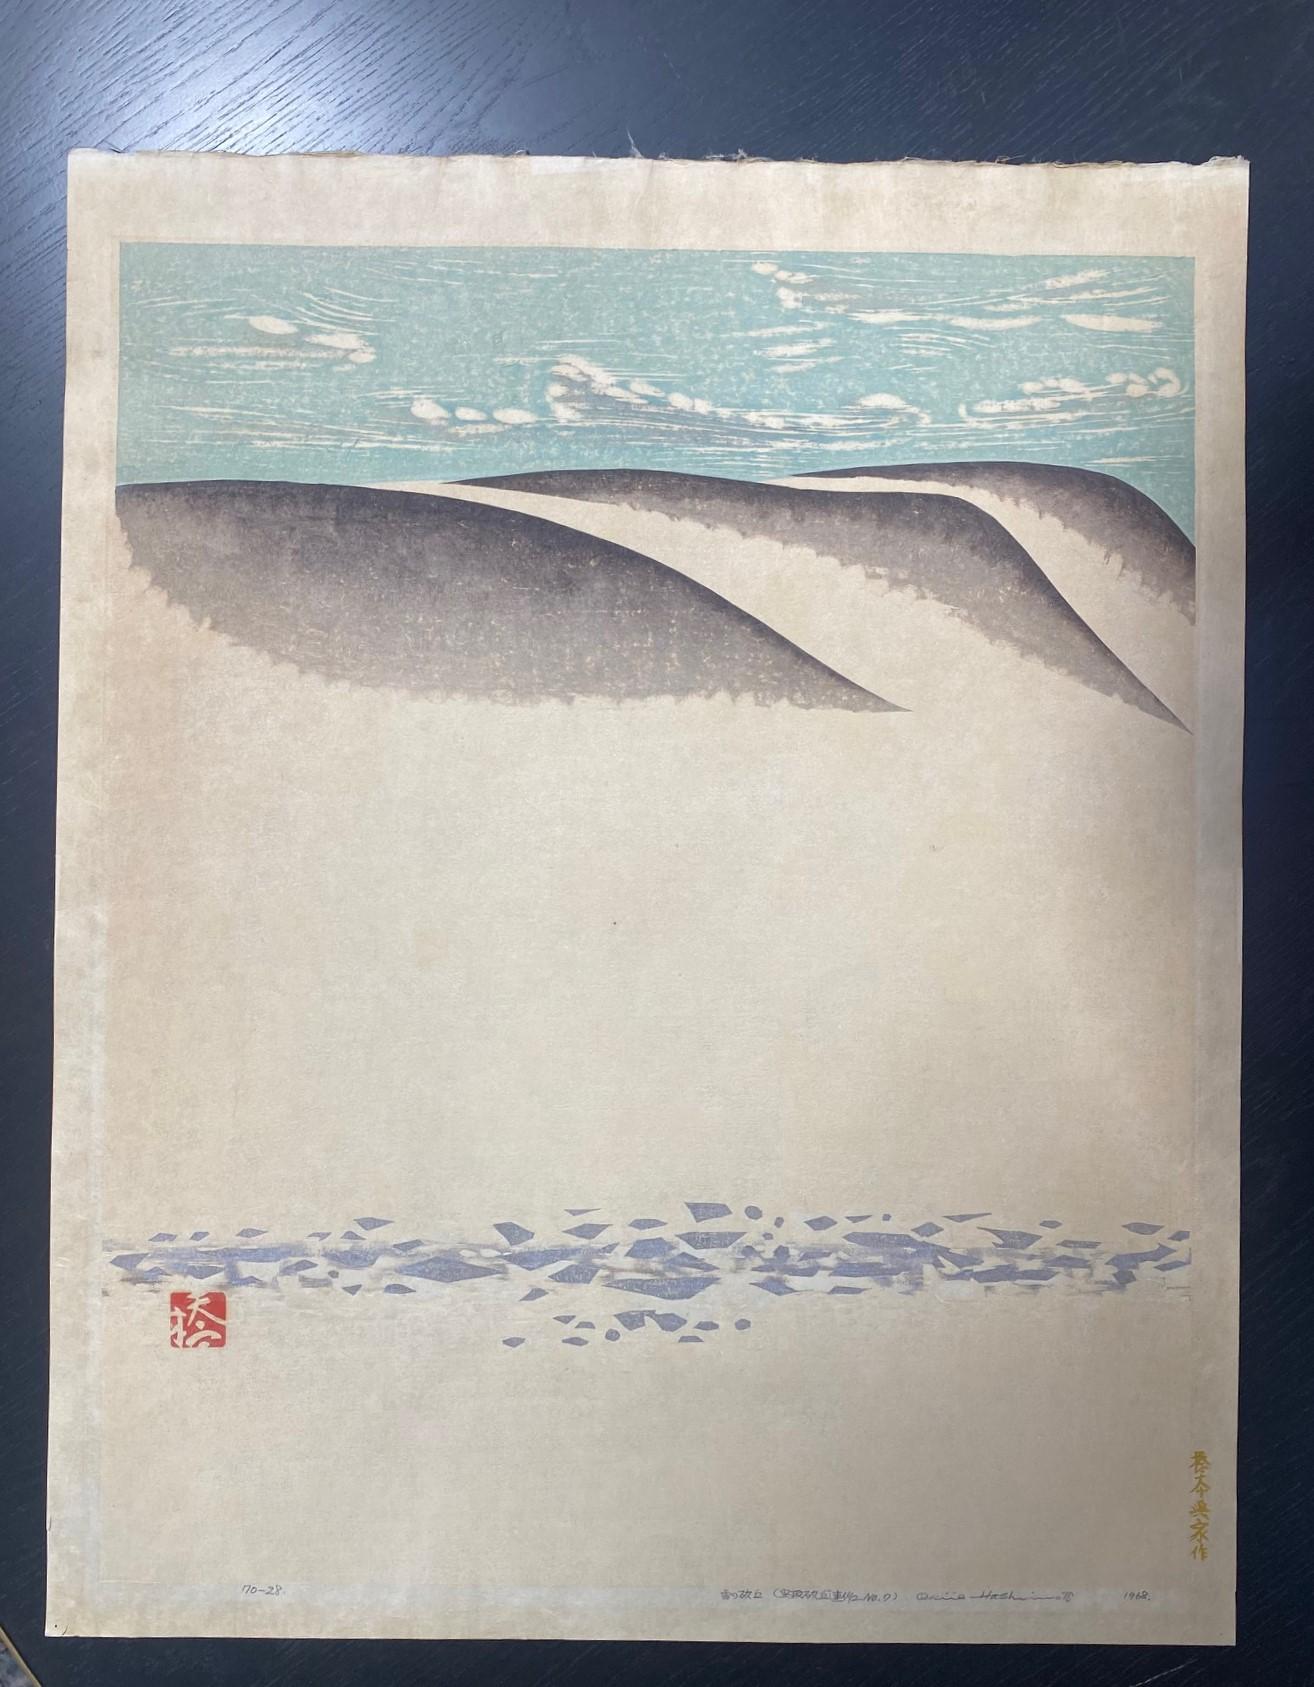 Ein wunderschön komponierter und subtil kolorierter Farbholzschnitt des bekannten japanischen Holzschnittkünstlers Okiie Hashimoto (1899-1993) mit dem Titel 